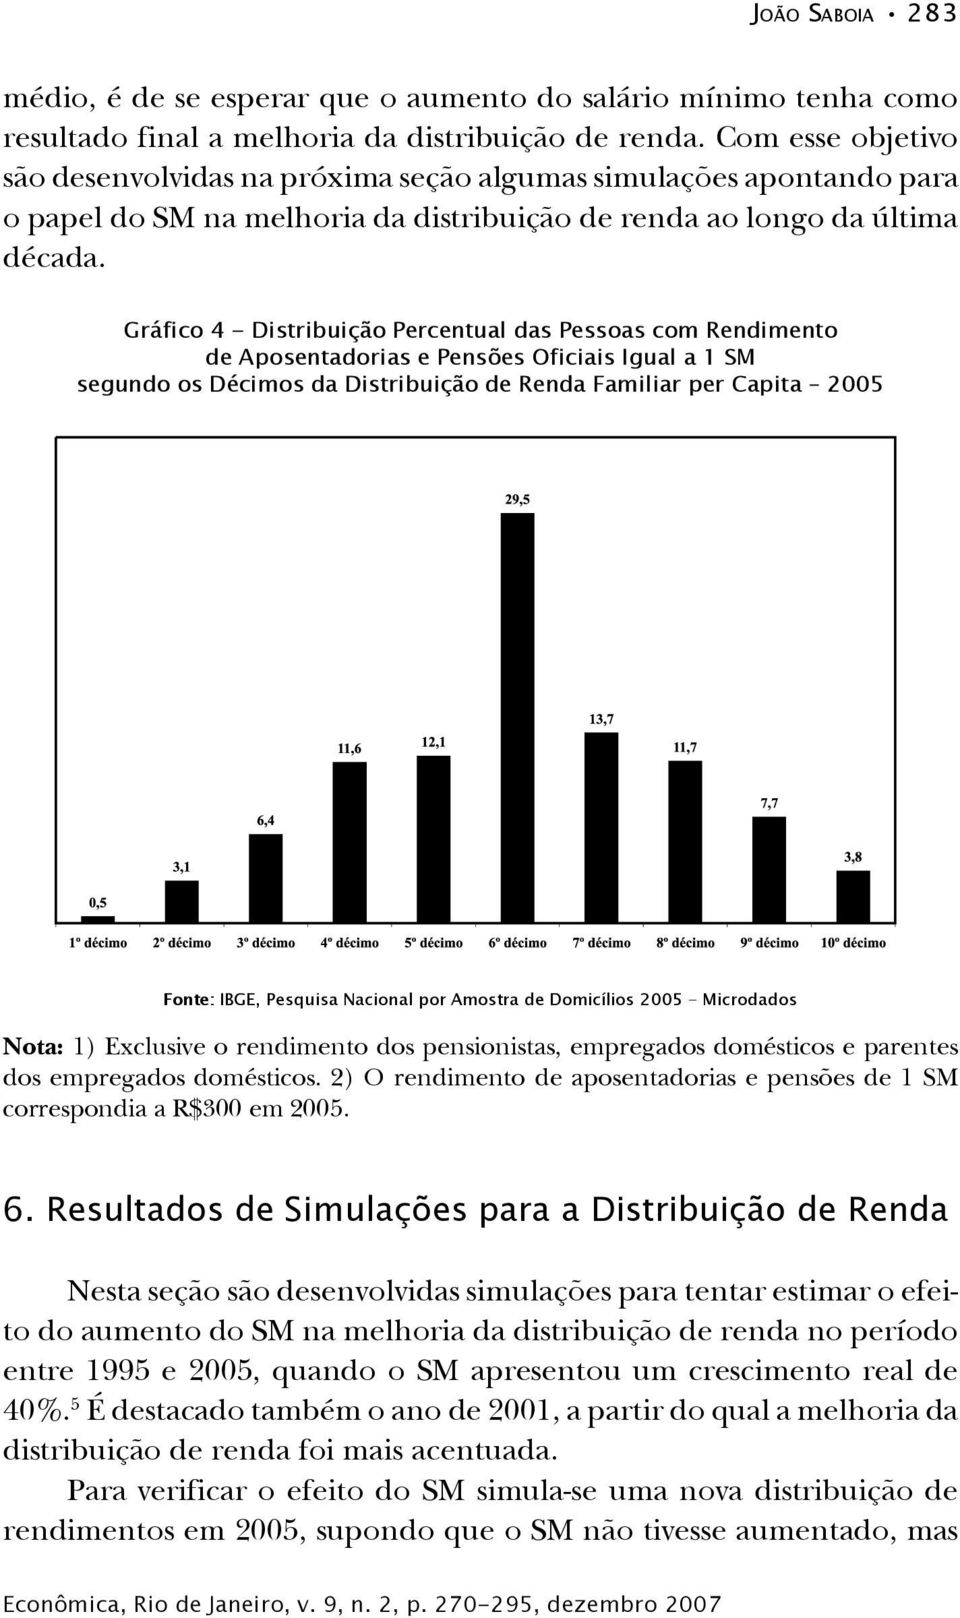 Gráfico 4 - Distribuição Percentual das Pessoas com Rendimento de Aposentadorias e Pensões Oficiais Igual a 1 SM segundo os Décimos da Distribuição de Renda Familiar per Capita 2005 Fonte: IBGE,